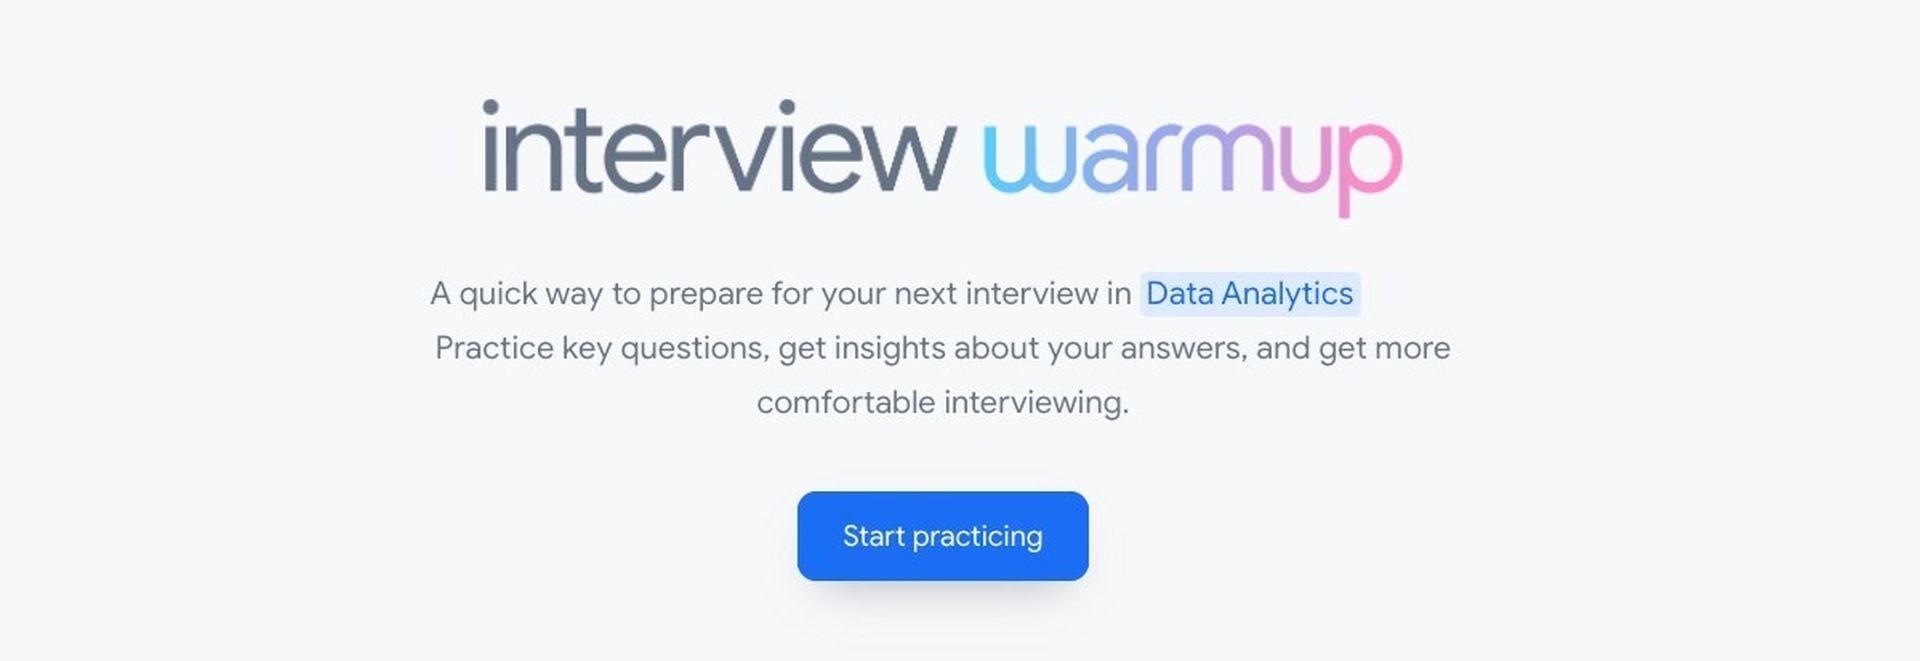 Wenn Sie vor einem Vorstellungsgespräch nervös sind, hilft Ihnen das neue KI-Tool namens Google Interview Warmup, vorher zu üben.  Google hat jetzt ein Tool, das Kandidaten beim Üben von Vorstellungsgesprächen unterstützt.  Es ist wahr, dass Vorstellungsgespräche stressig sein können.  Dank des neuen Tools von Google können Sie üben und besser vorbereitet sein, bevor Sie zu einem Vorstellungsgespräch gehen.